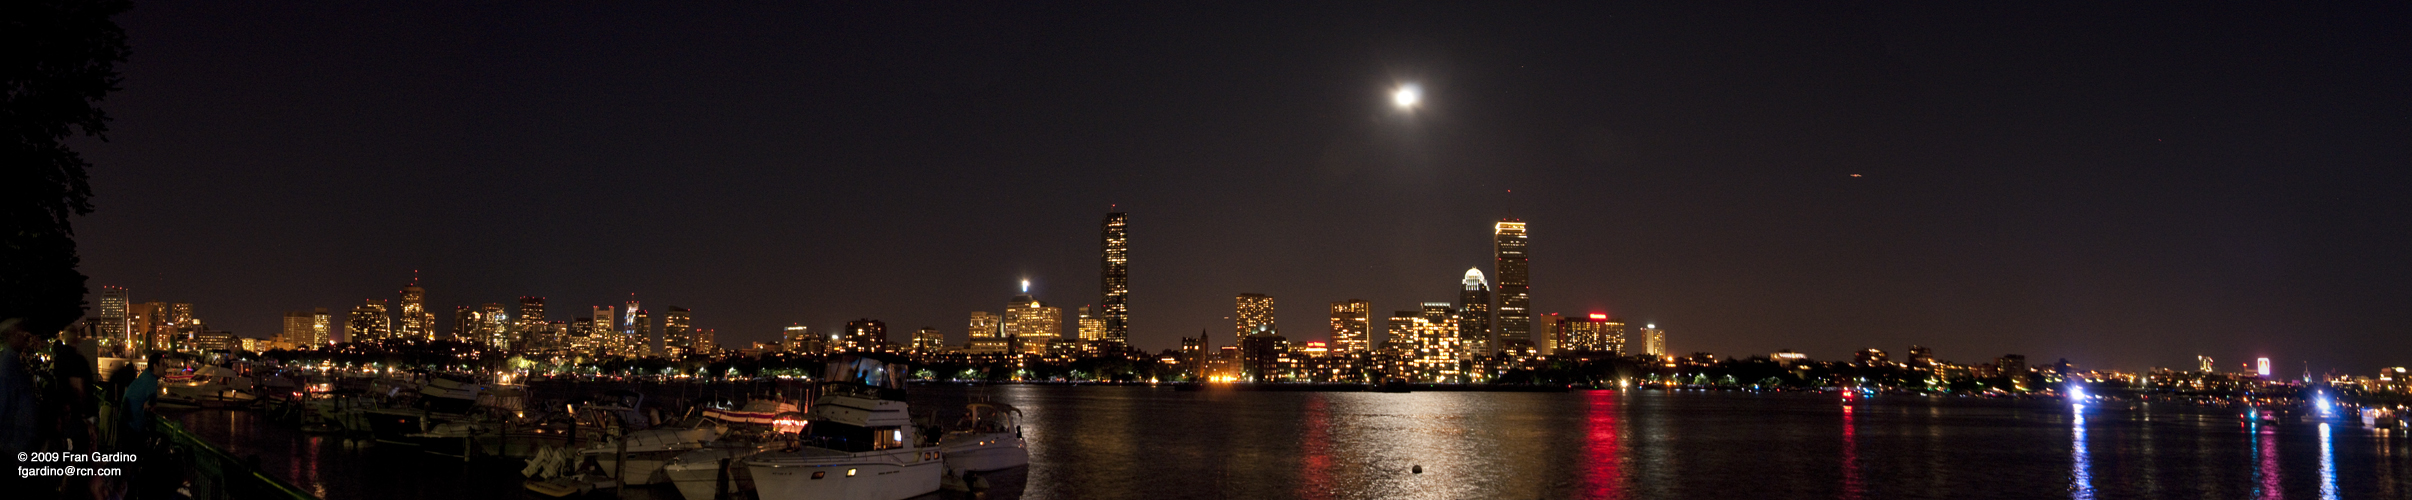 Pre Boston Pops Night Time Panorama